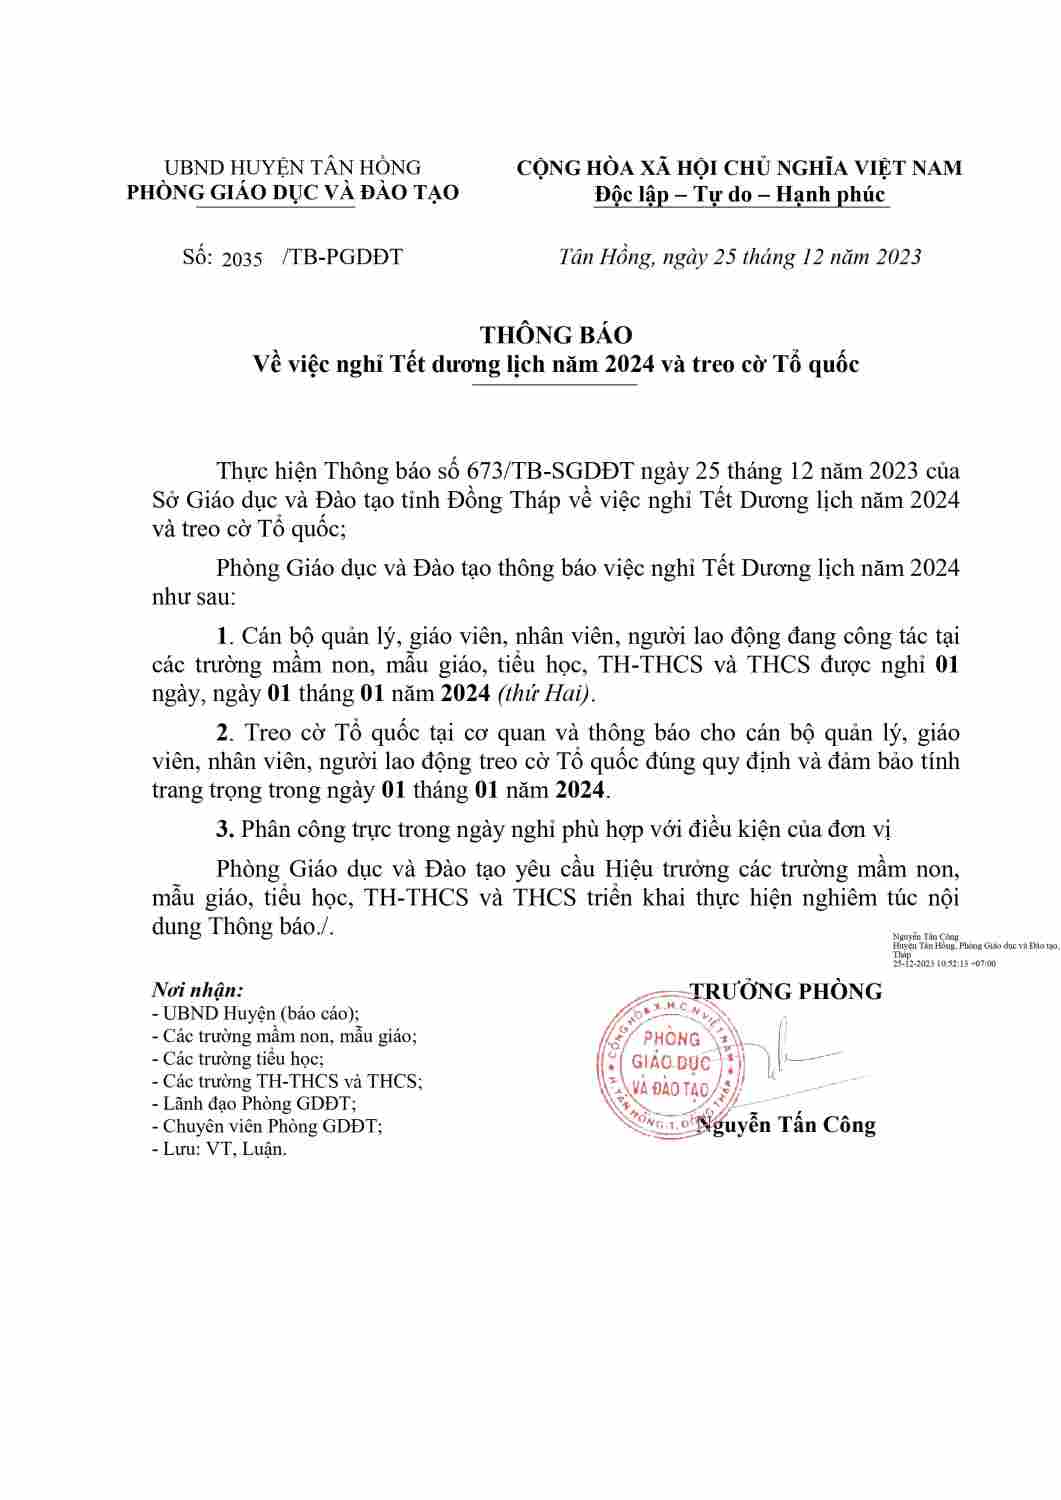 Copy of THONG BAO NGHI TET DUONG LICH NAM 2024